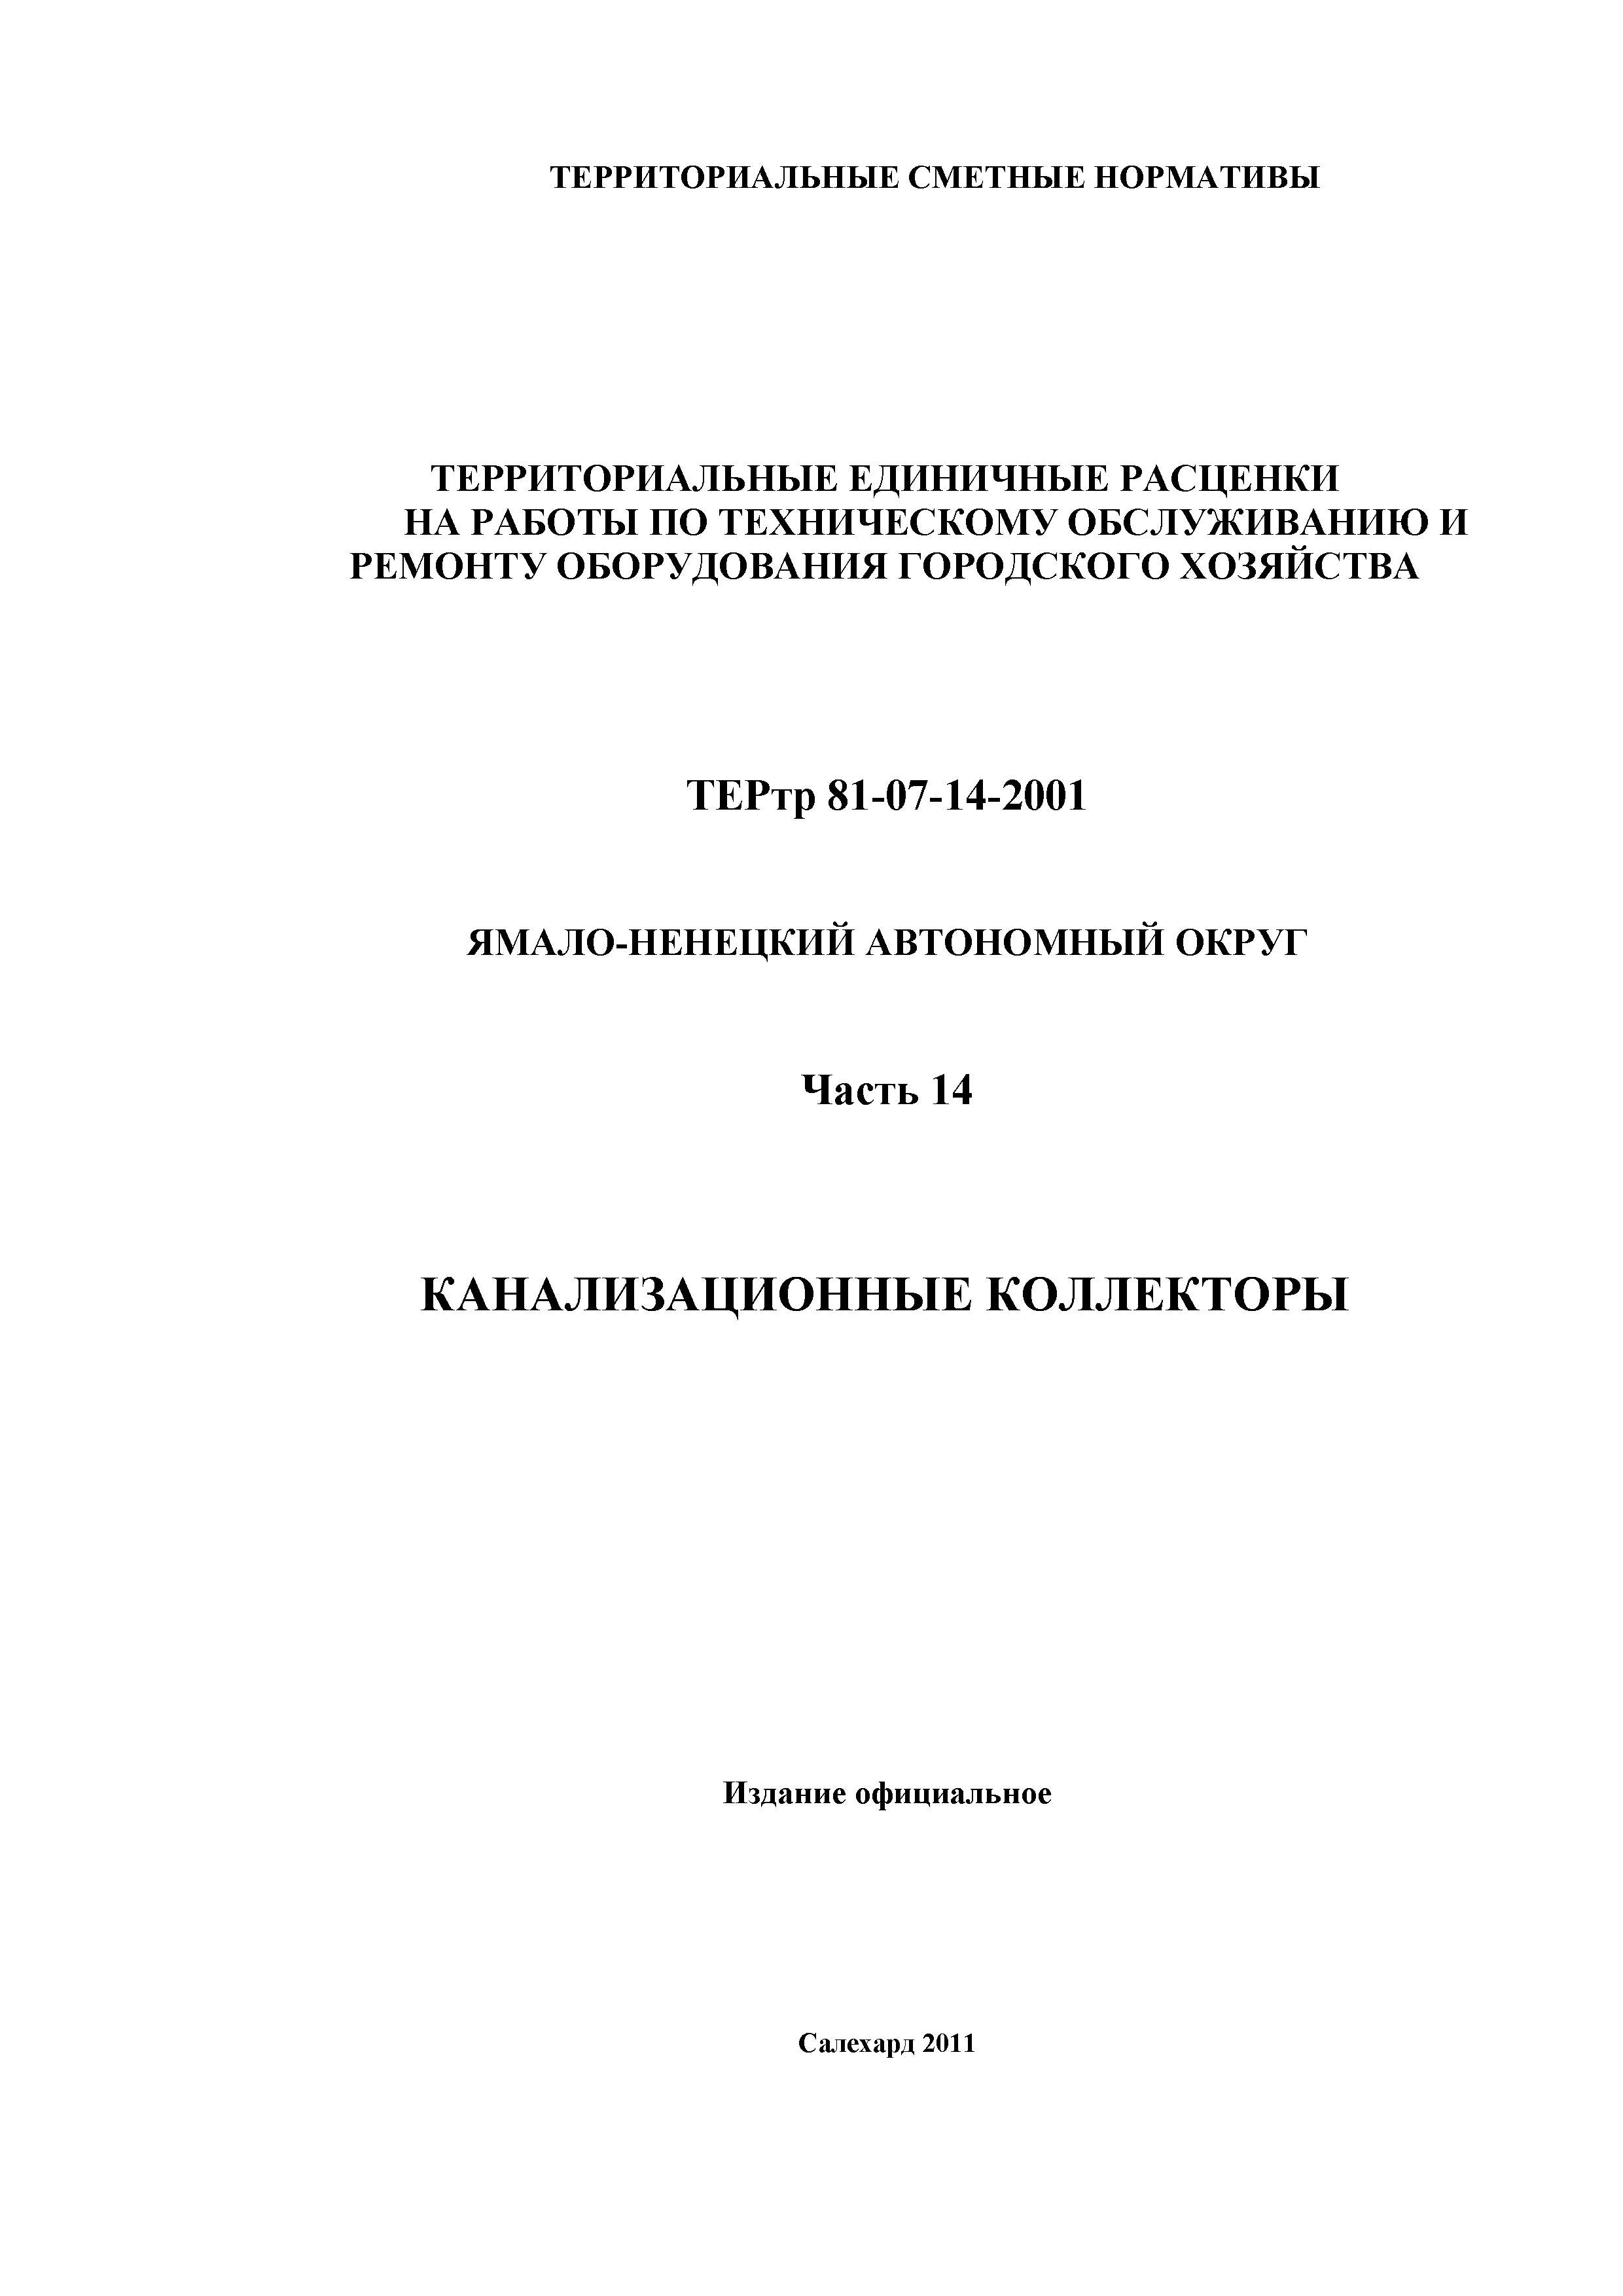 ТЕРтр Ямало-Ненецкий автономный округ 14-2001